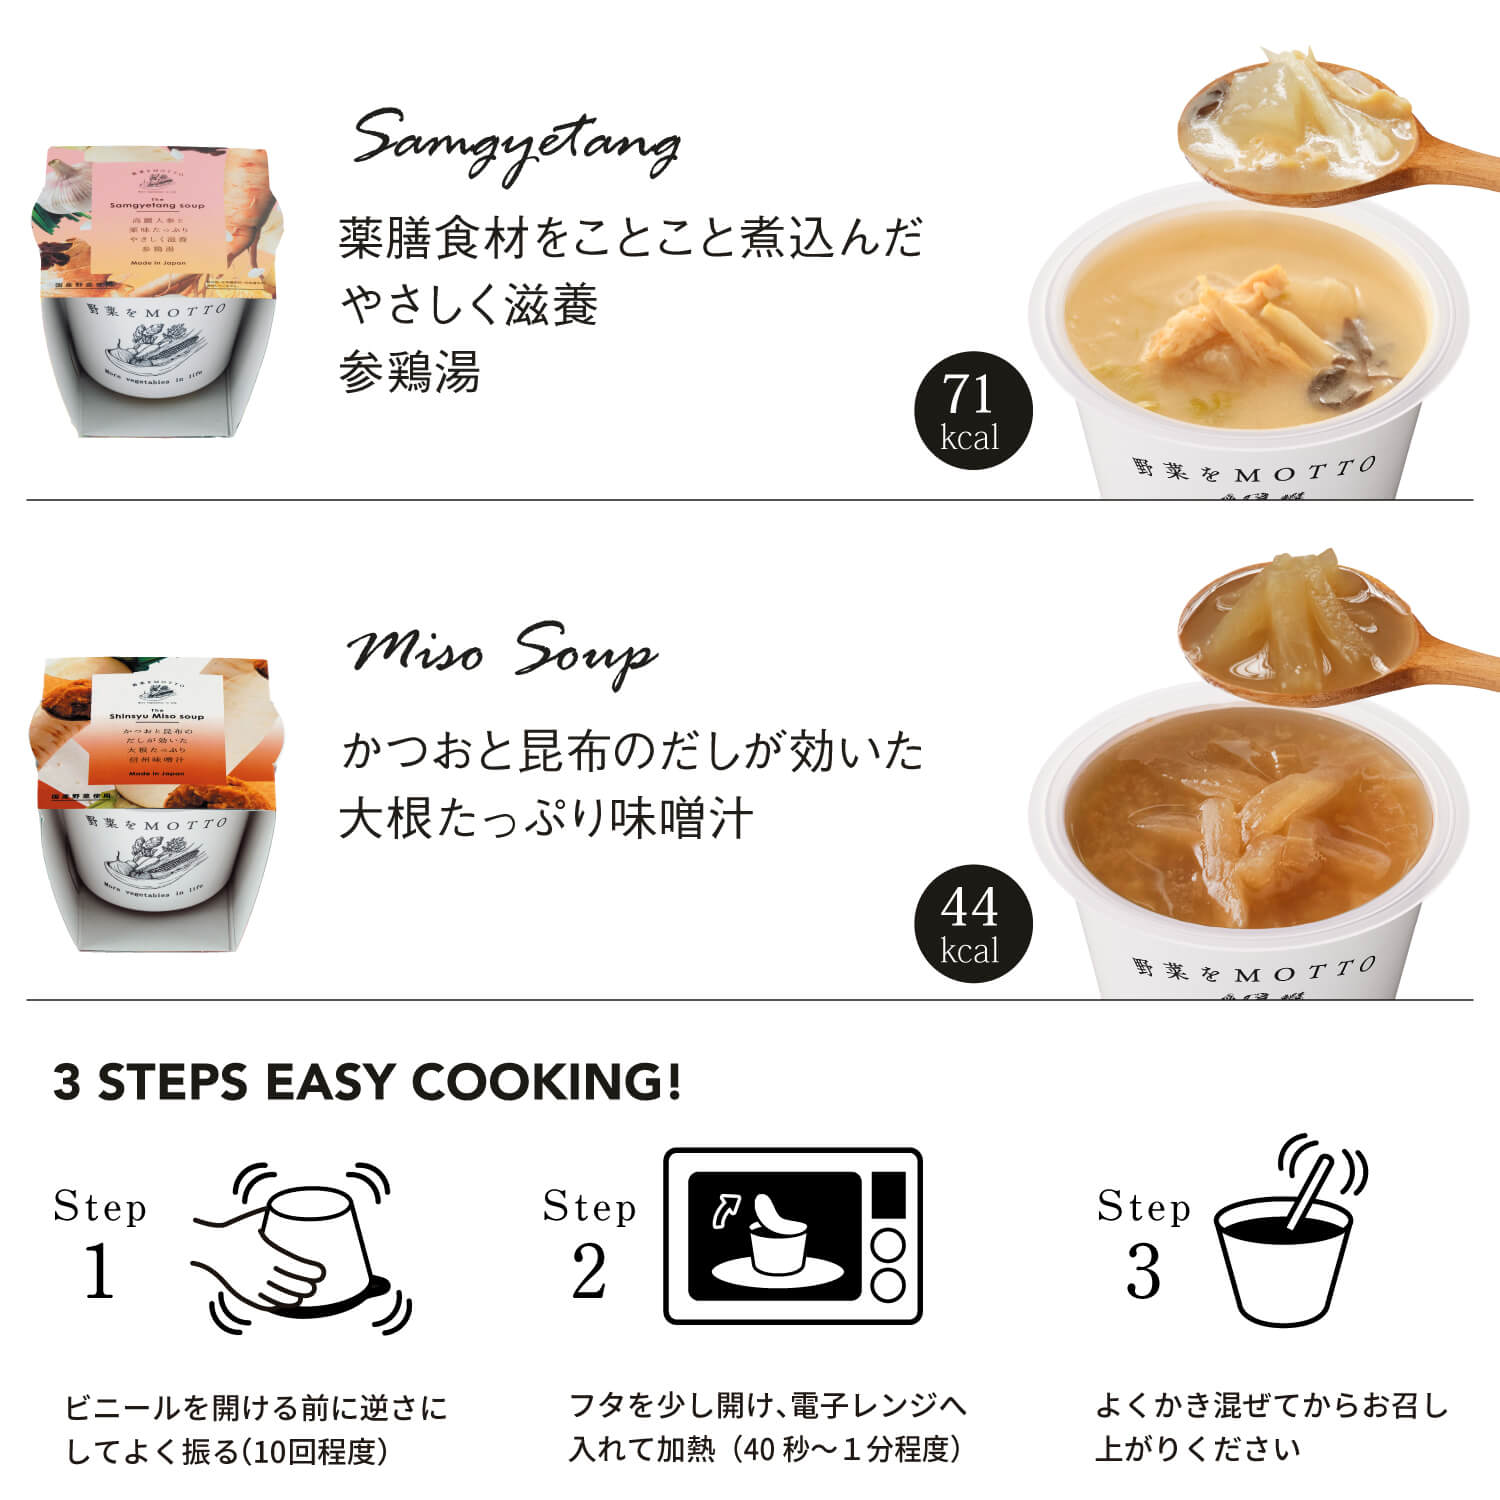 選べるスープ18個(9種×2)ギフトセット